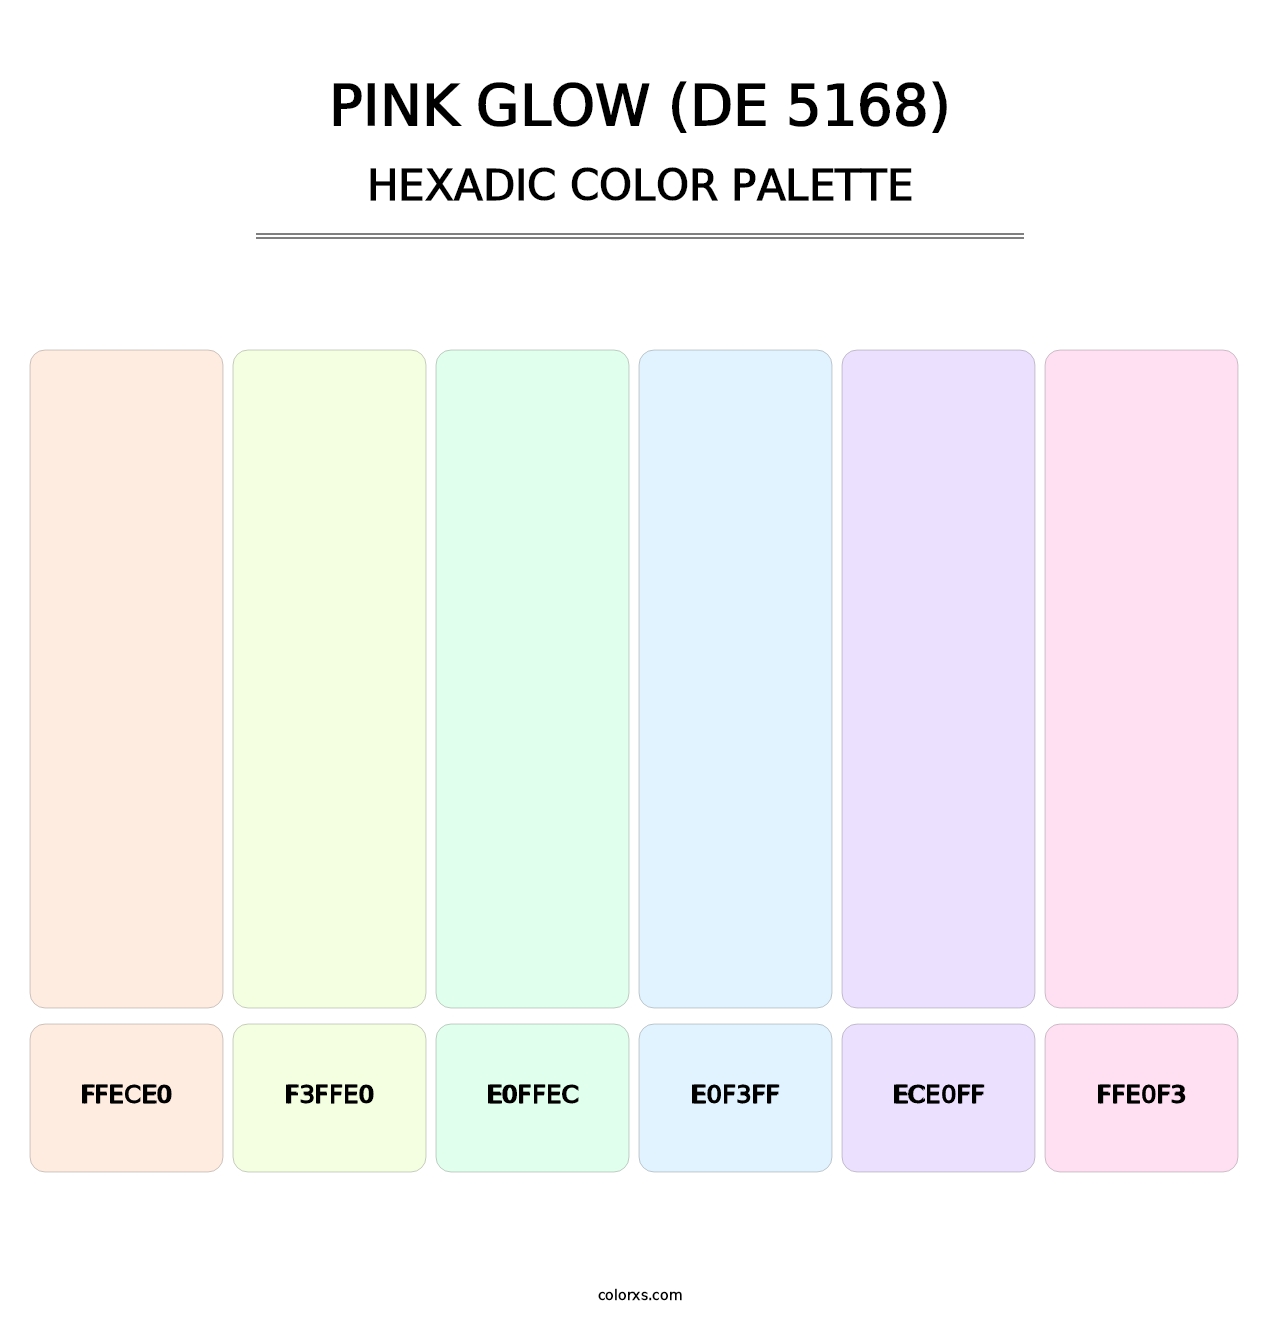 Pink Glow (DE 5168) - Hexadic Color Palette